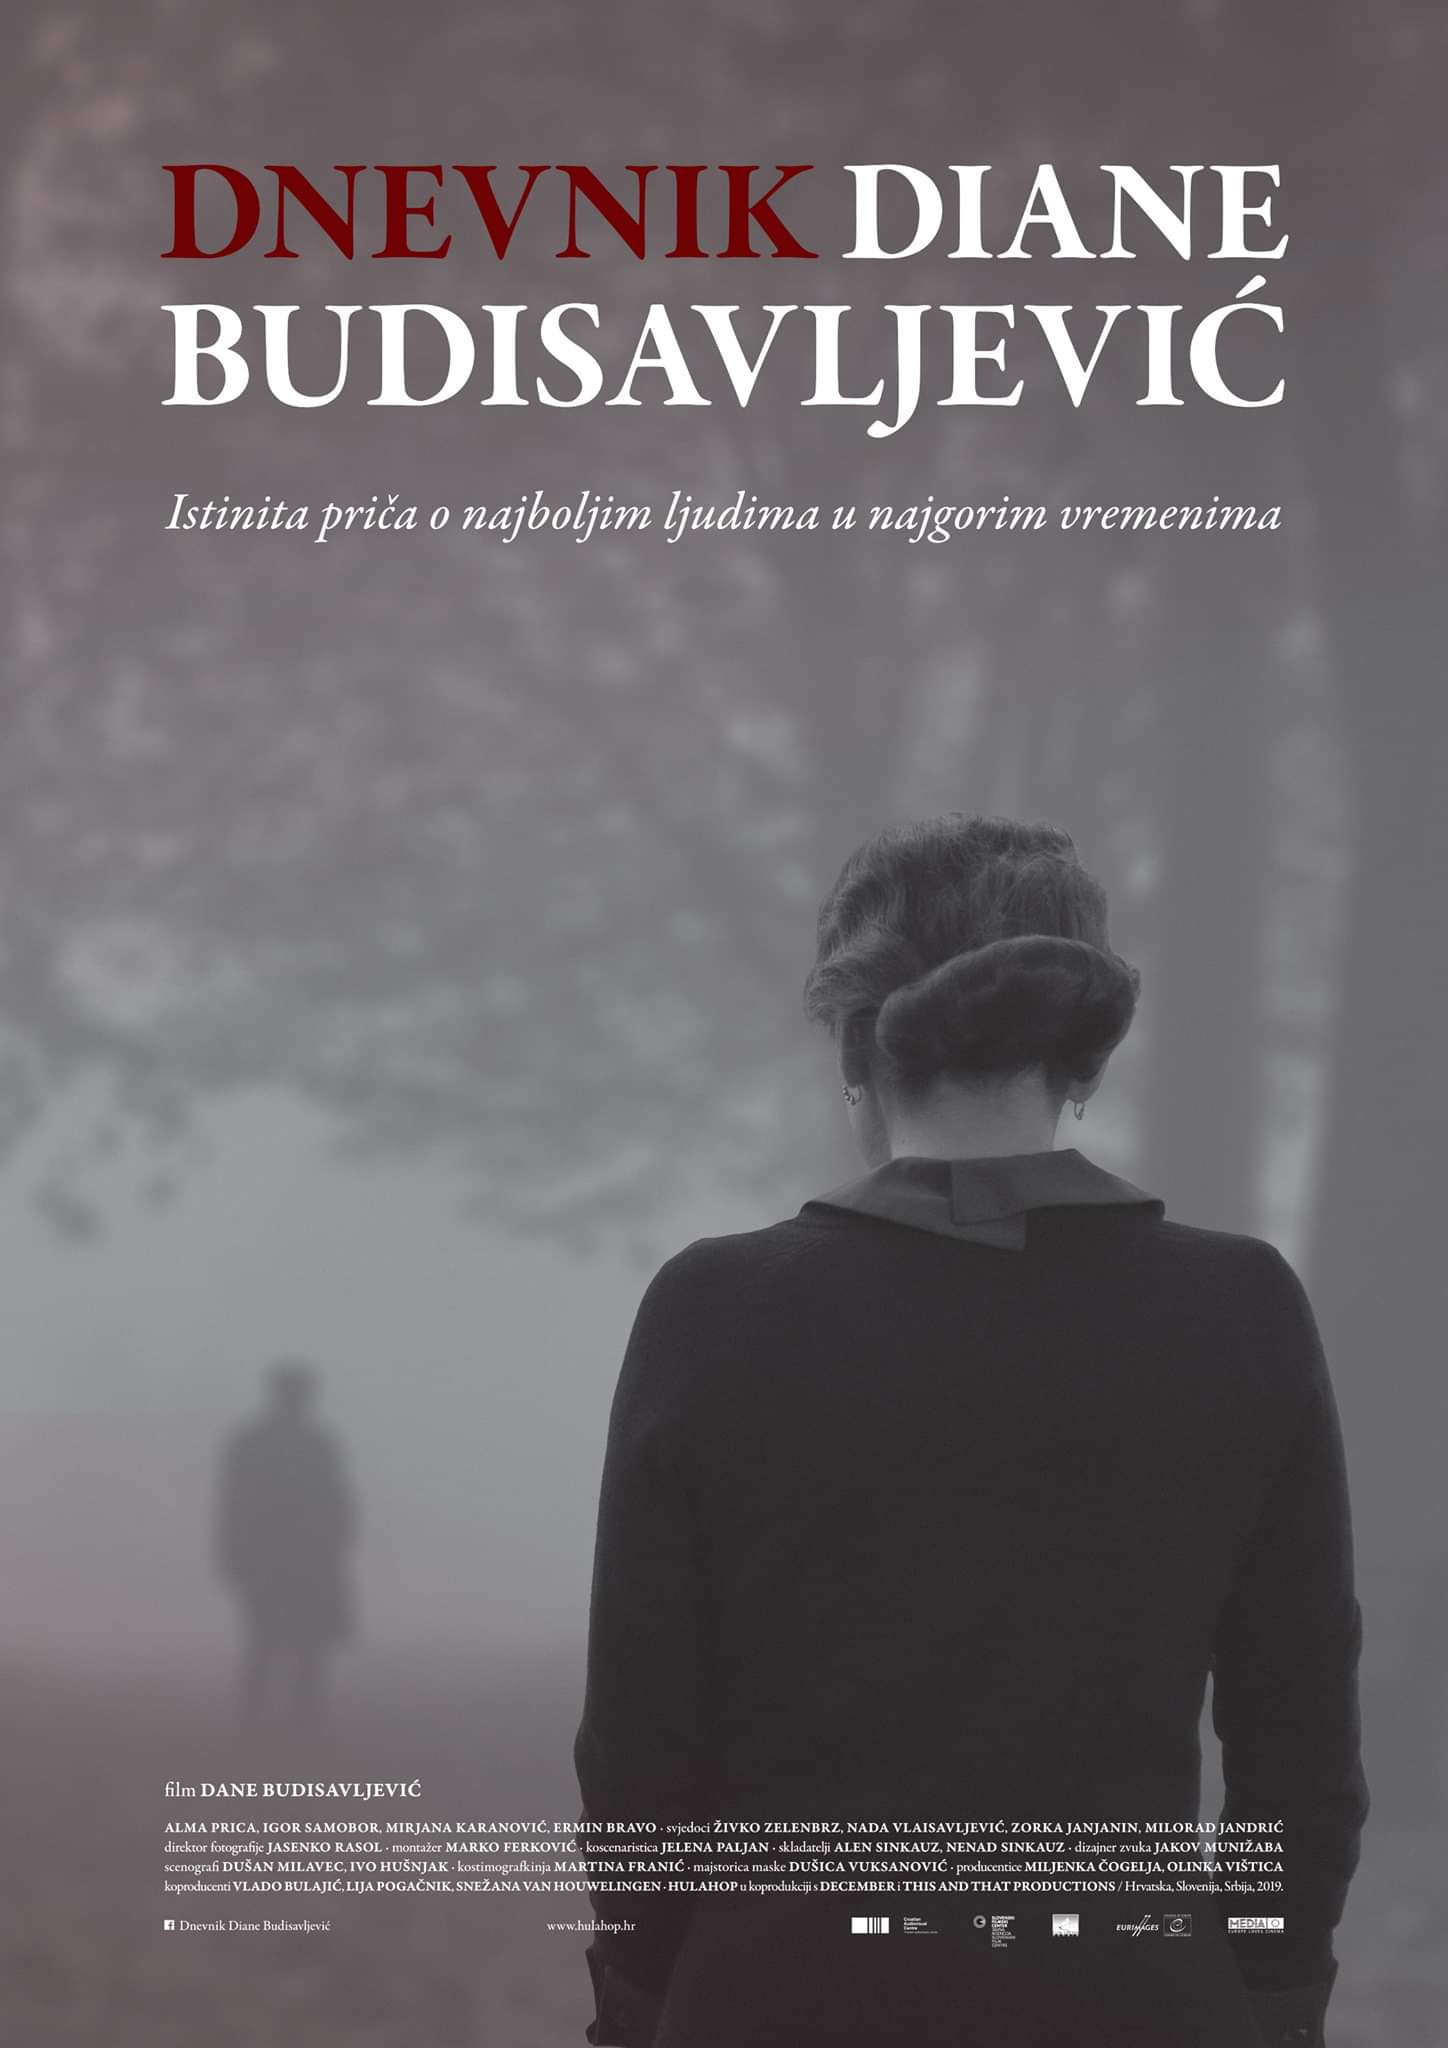 Dnevnik Diane Budisavljevic (2019) постер